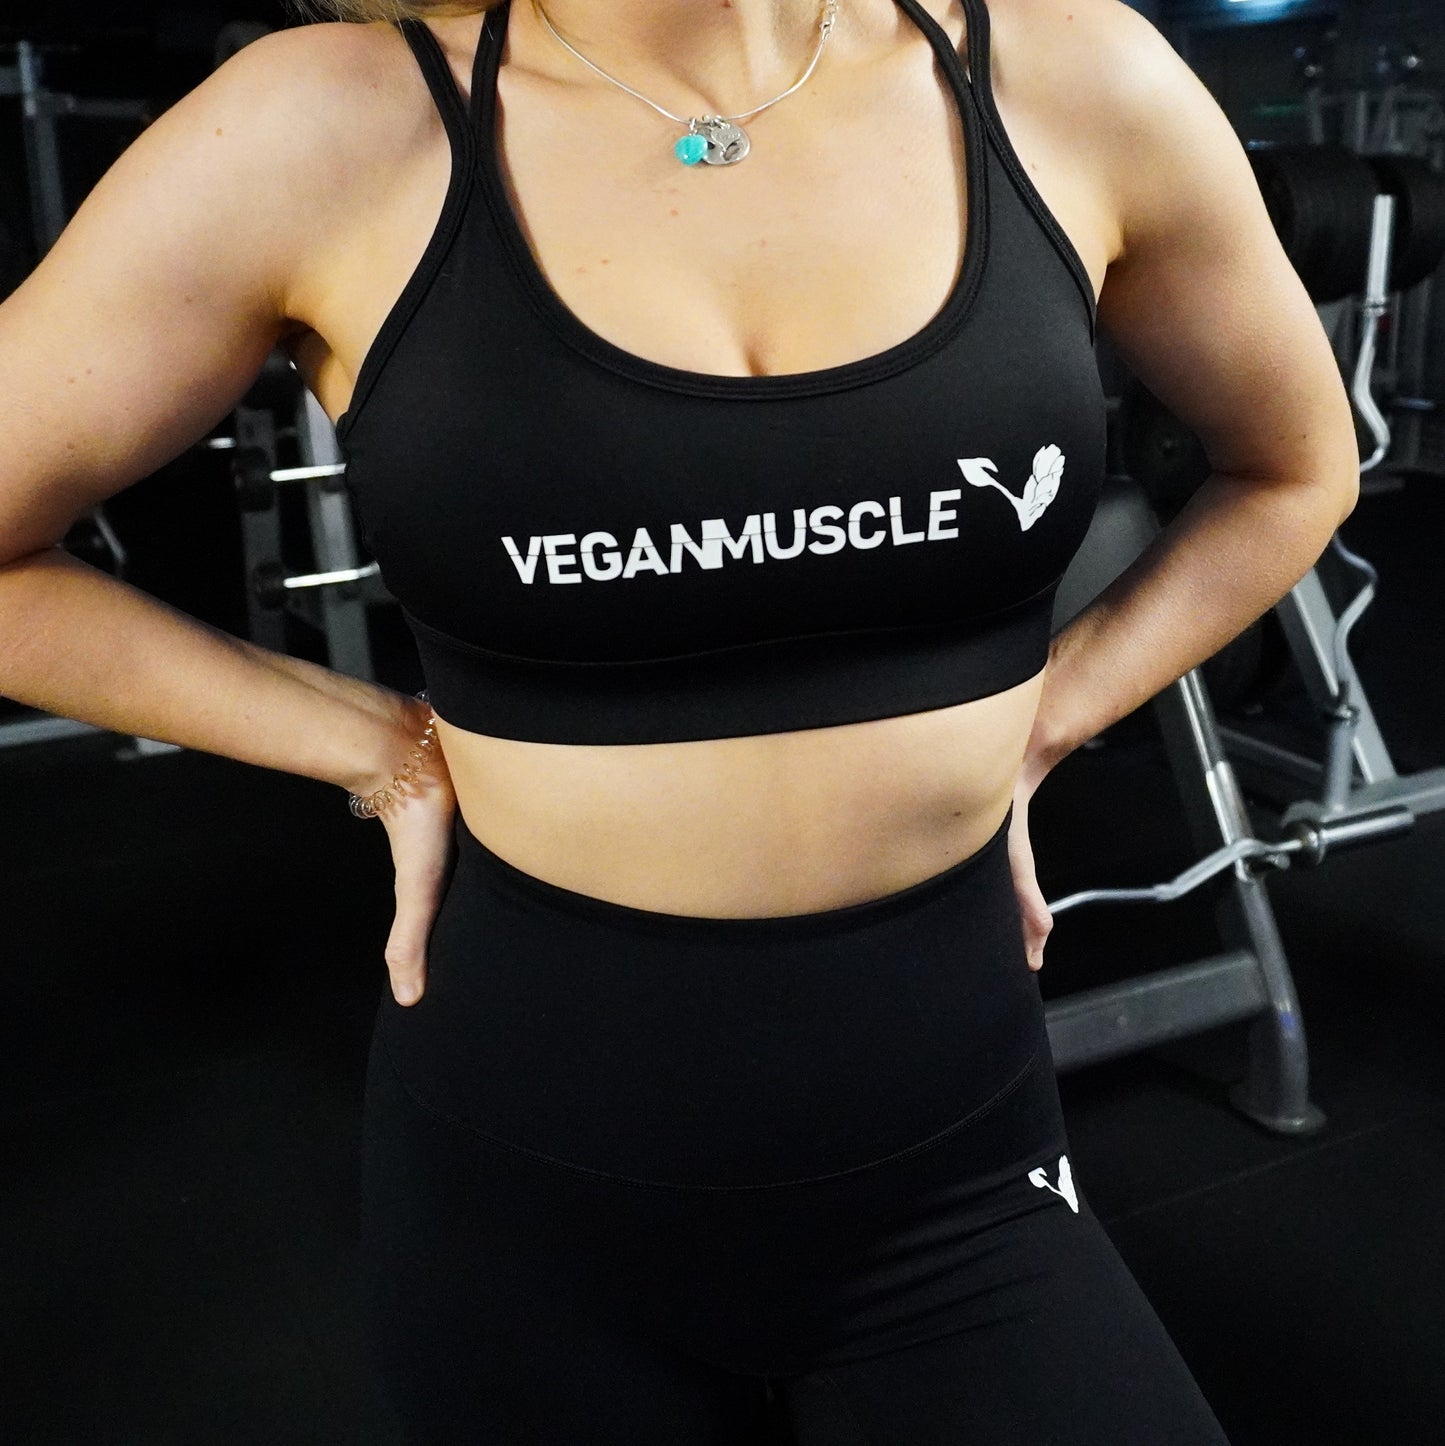 Vegan Strong - Women's Sports Bra – REBL USA